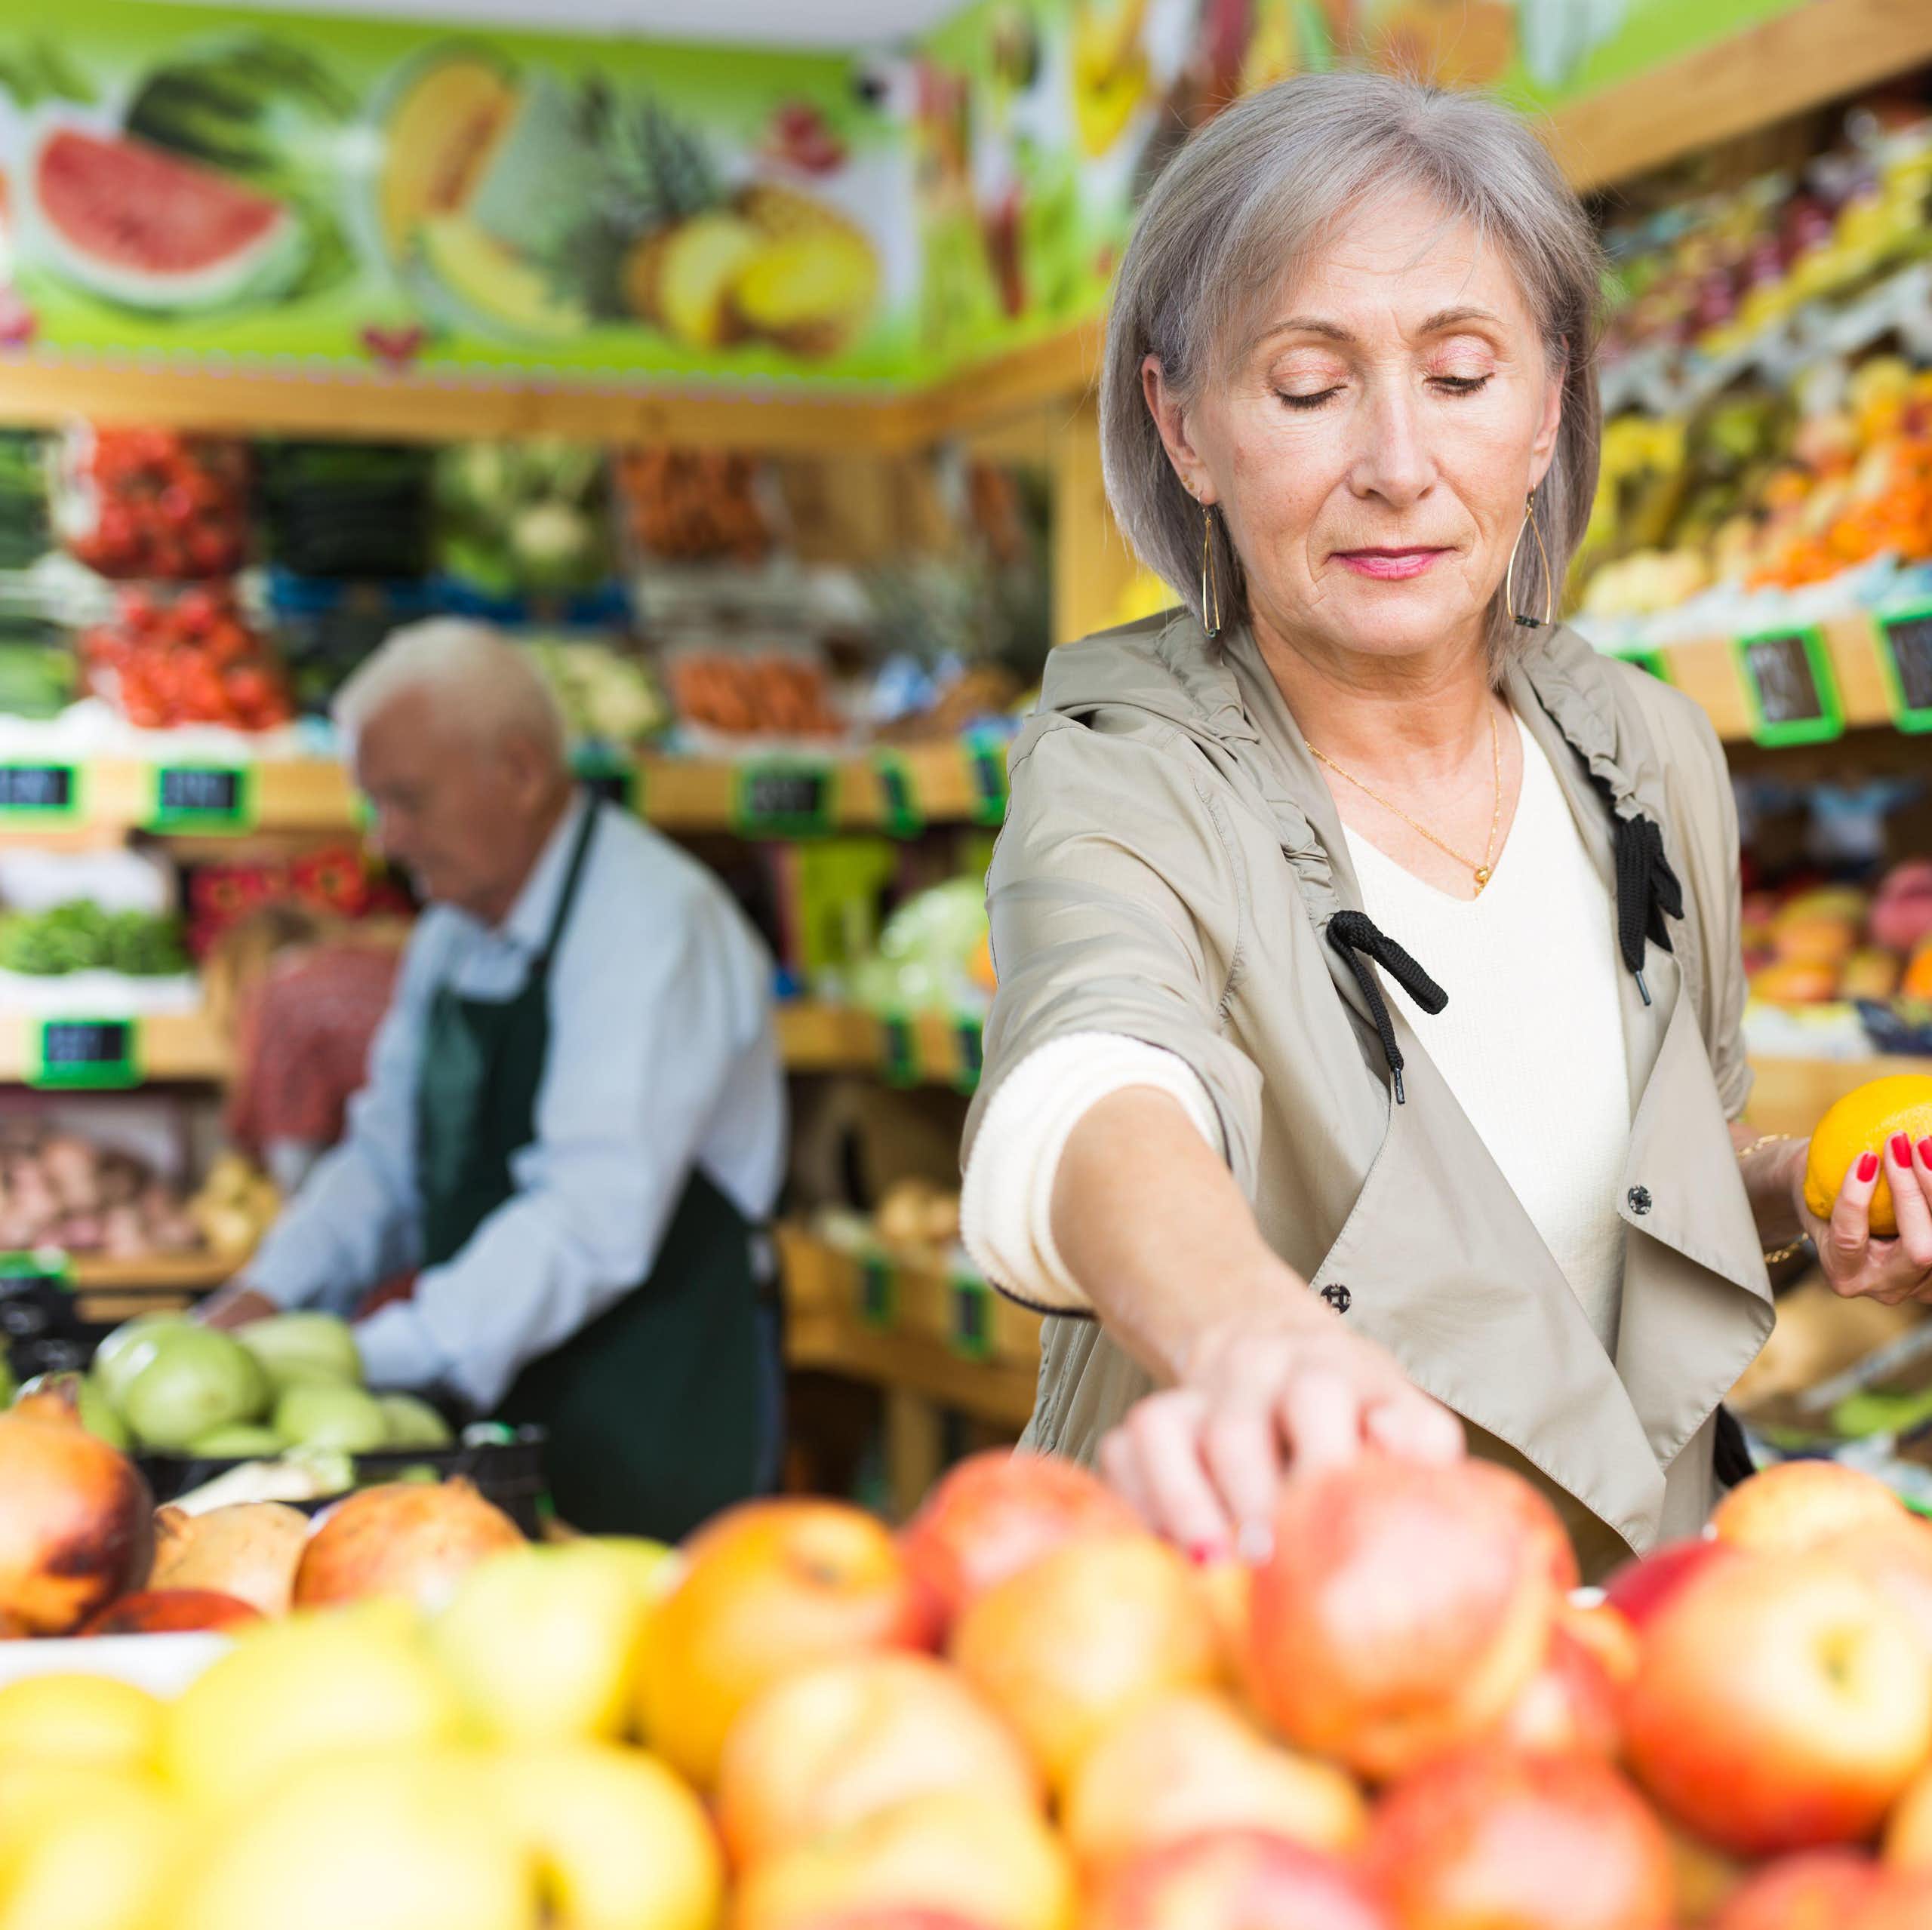 Une femme manipule des fruits dans un marché d'alimentation